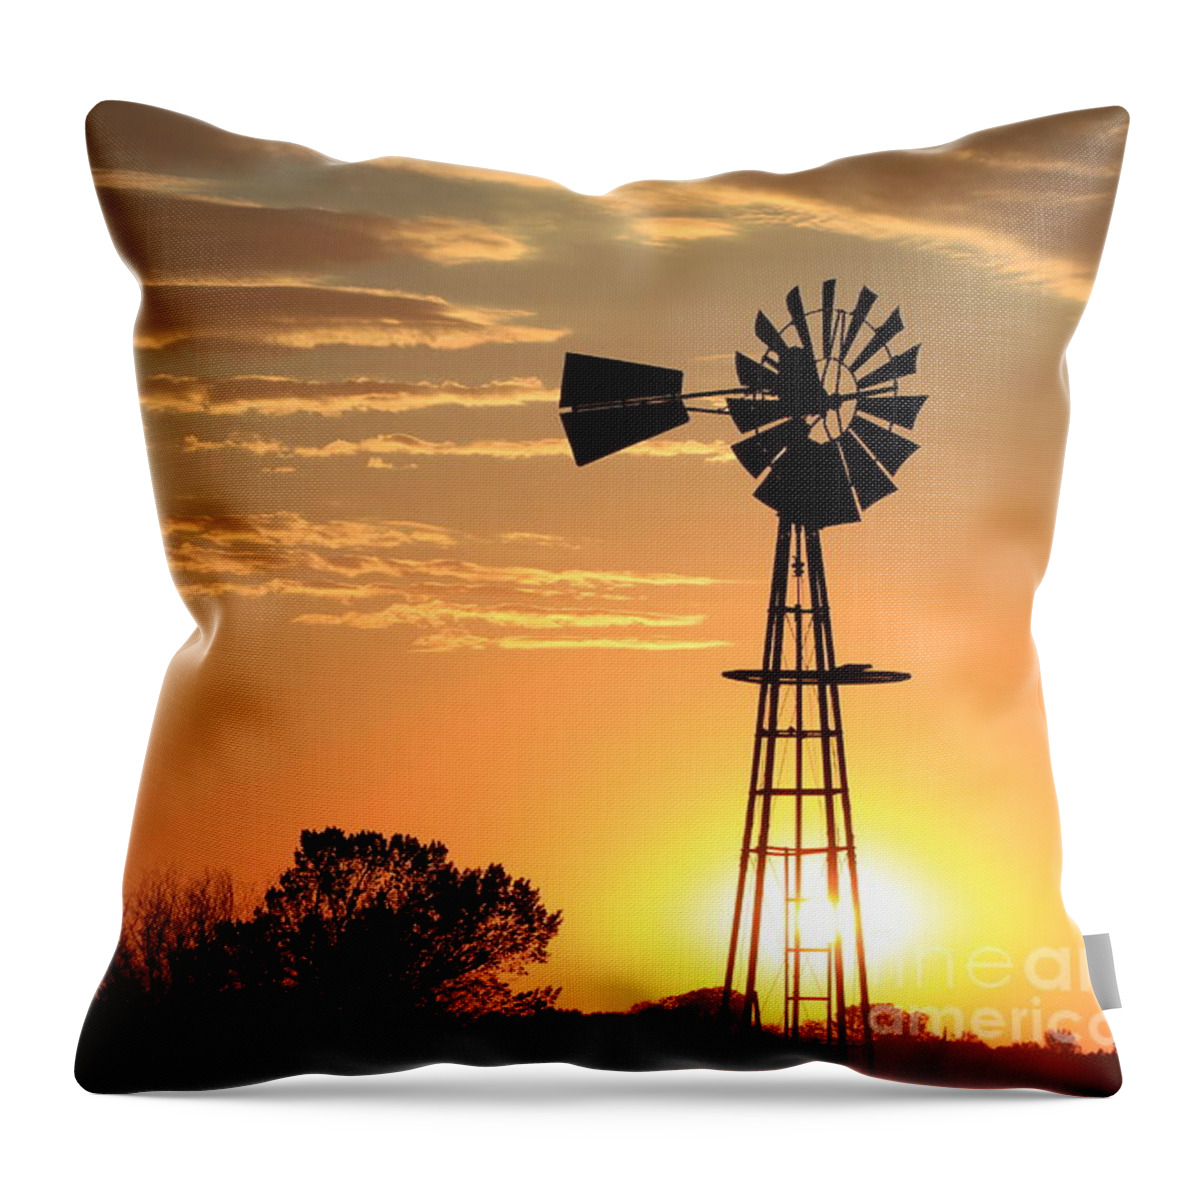 Sunset Throw Pillow featuring the photograph Golden Sky Windmill Sunset Silhouette by Robert D Brozek